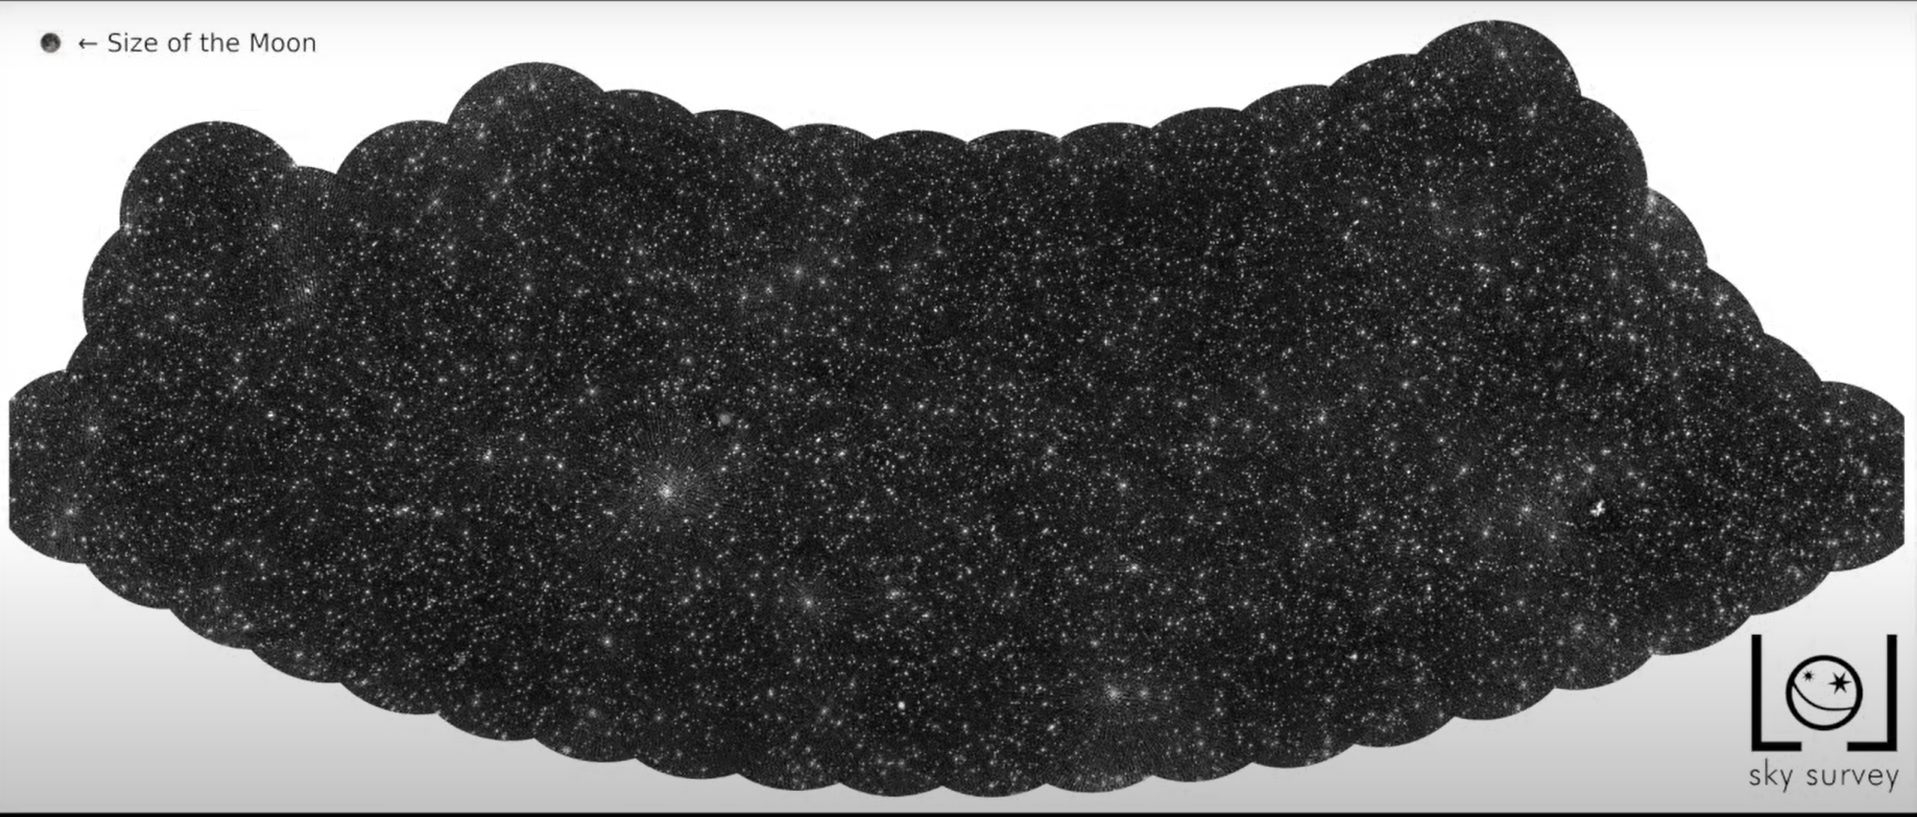 圖片中的白色星點不是恆星或星系而是黑洞。（LOFAR/LOL 調查）